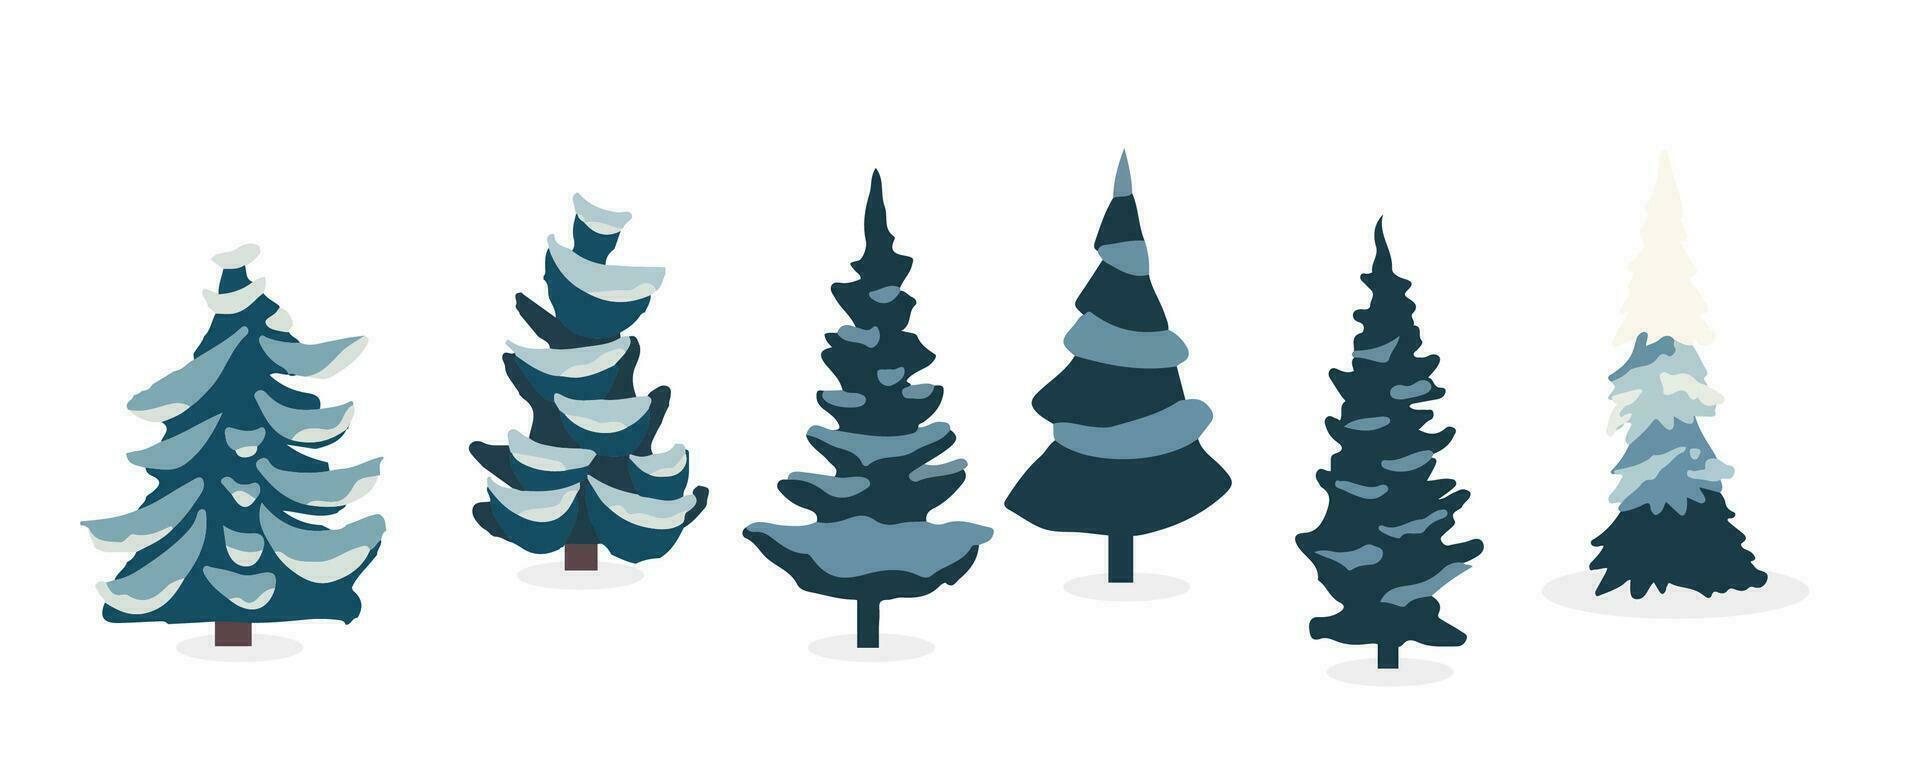 invierno árbol objeto set.editable vector ilustración para tarjeta postal